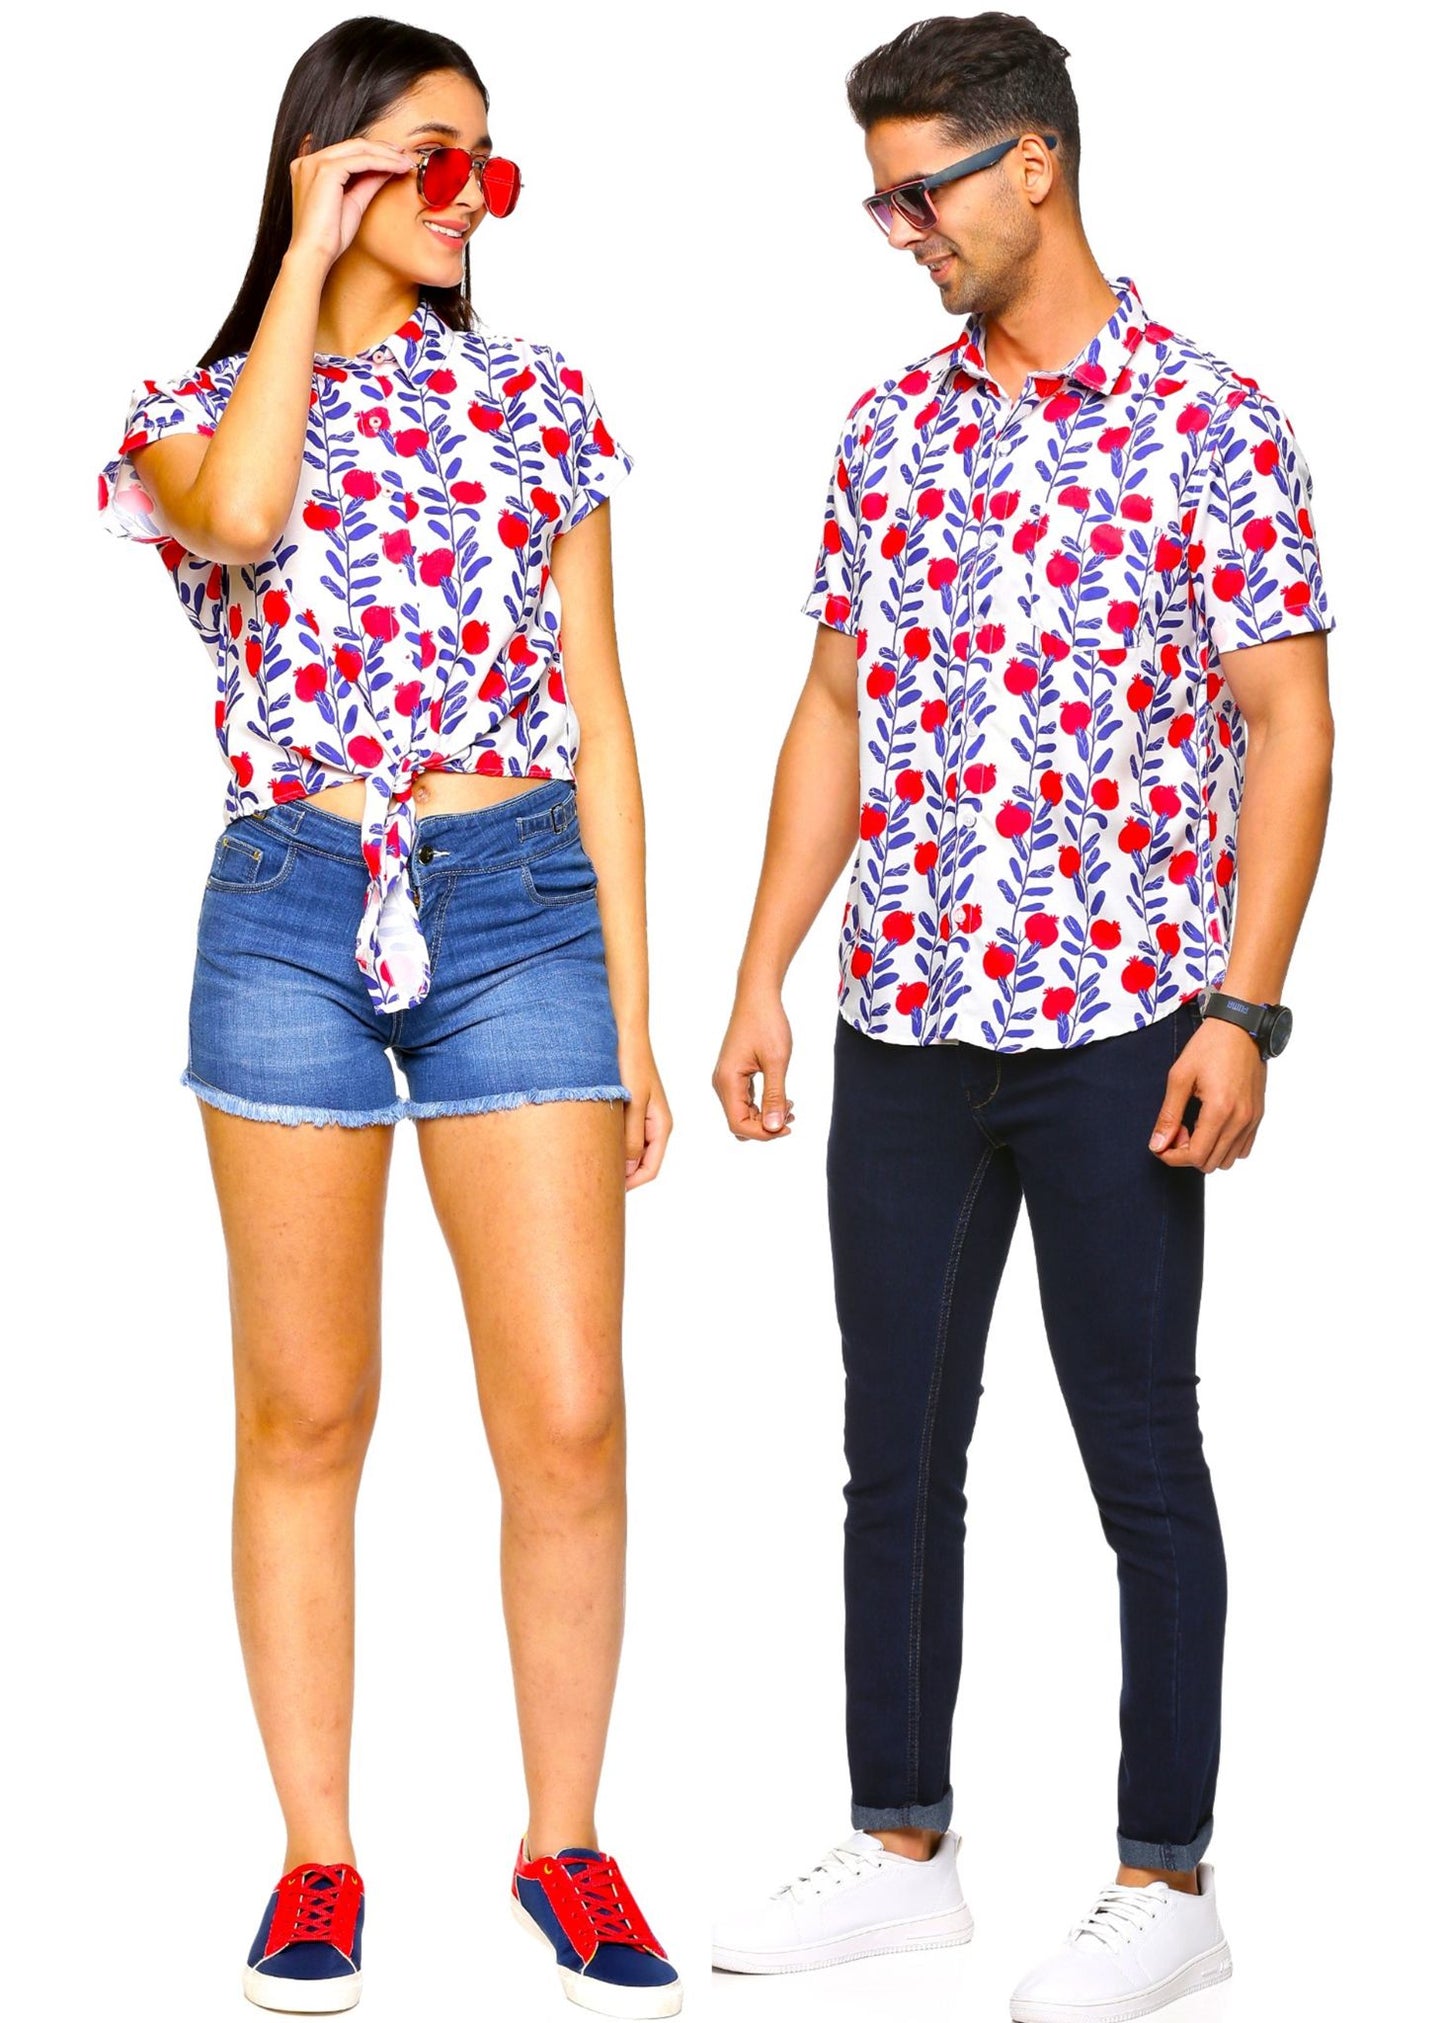 Pomegranate Couple Matching Shirts